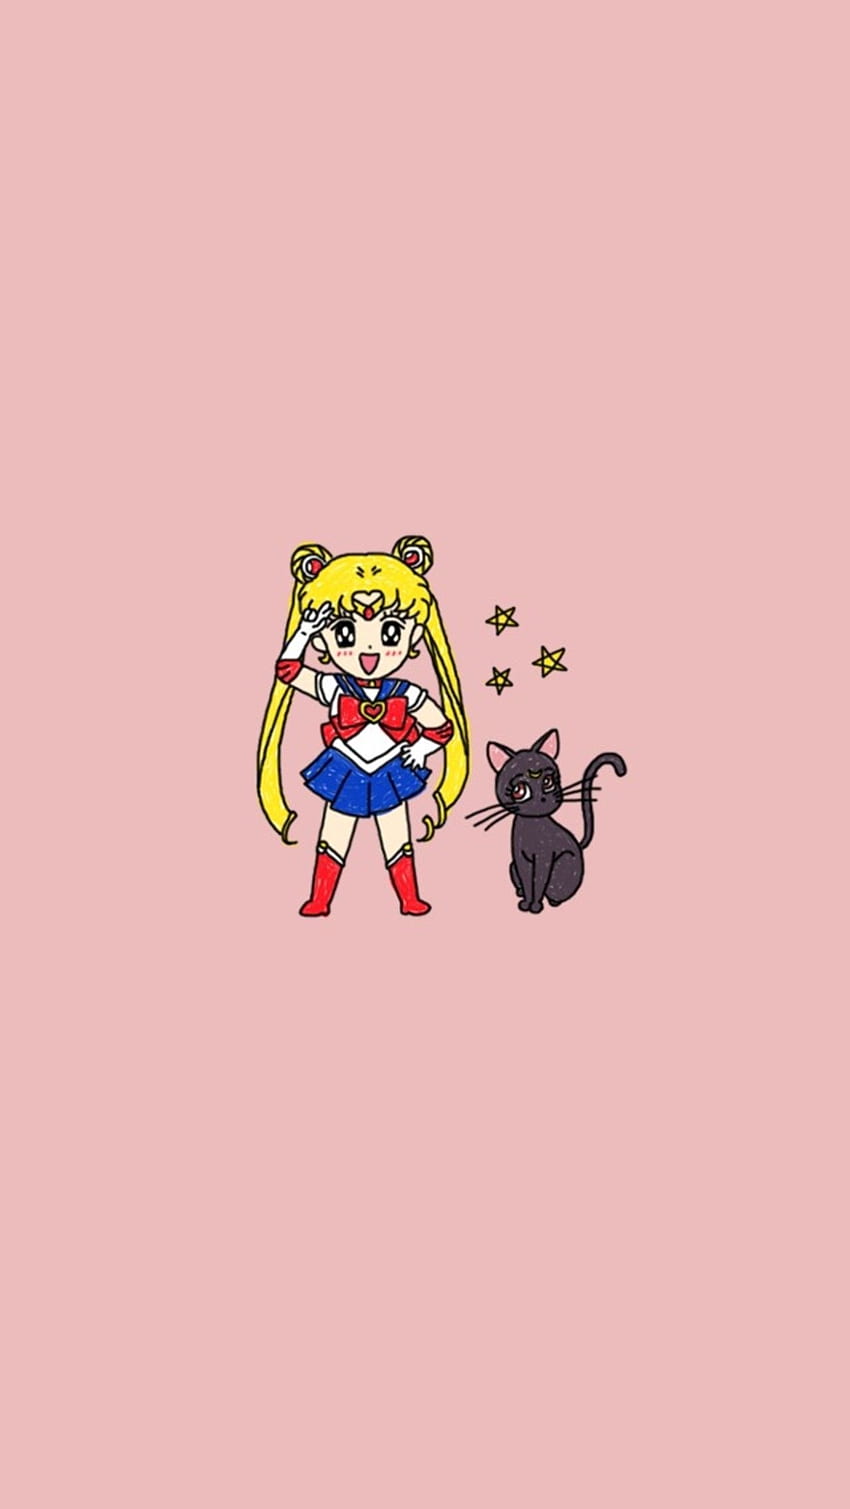 Hình nền Sailor Moon đầy màu sắc sẽ khiến bạn yêu thích nhân vật này hơn bao giờ hết! Đừng bỏ lỡ cơ hội tải về và sử dụng hình nền Sailor Moon độc đáo này trên điện thoại của bạn. 